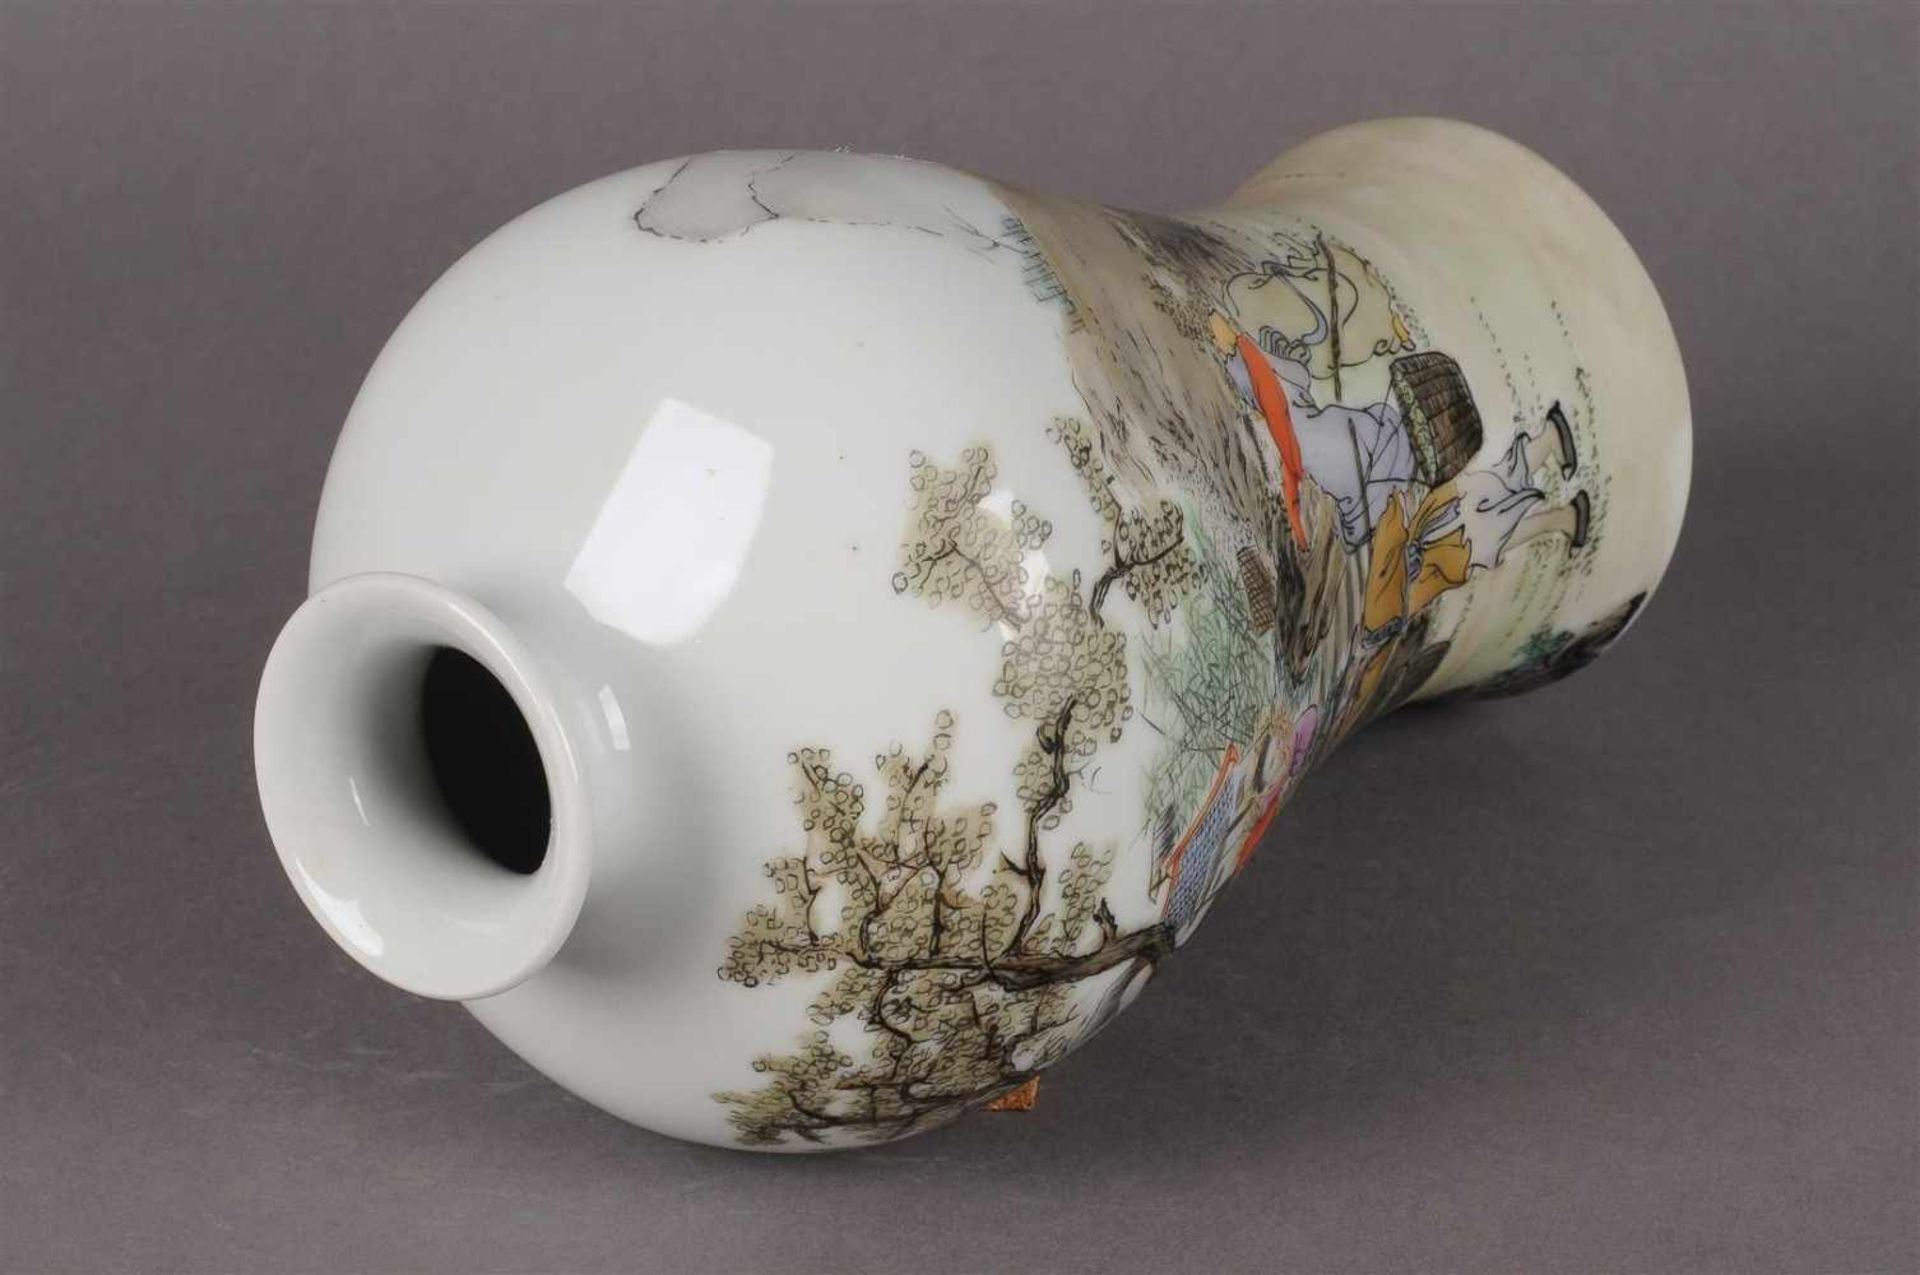 Polychroom porseleinen Meiping vaas met figuraal landschaps decor en tekst, gemerkt met zegelmerk, - Bild 5 aus 6